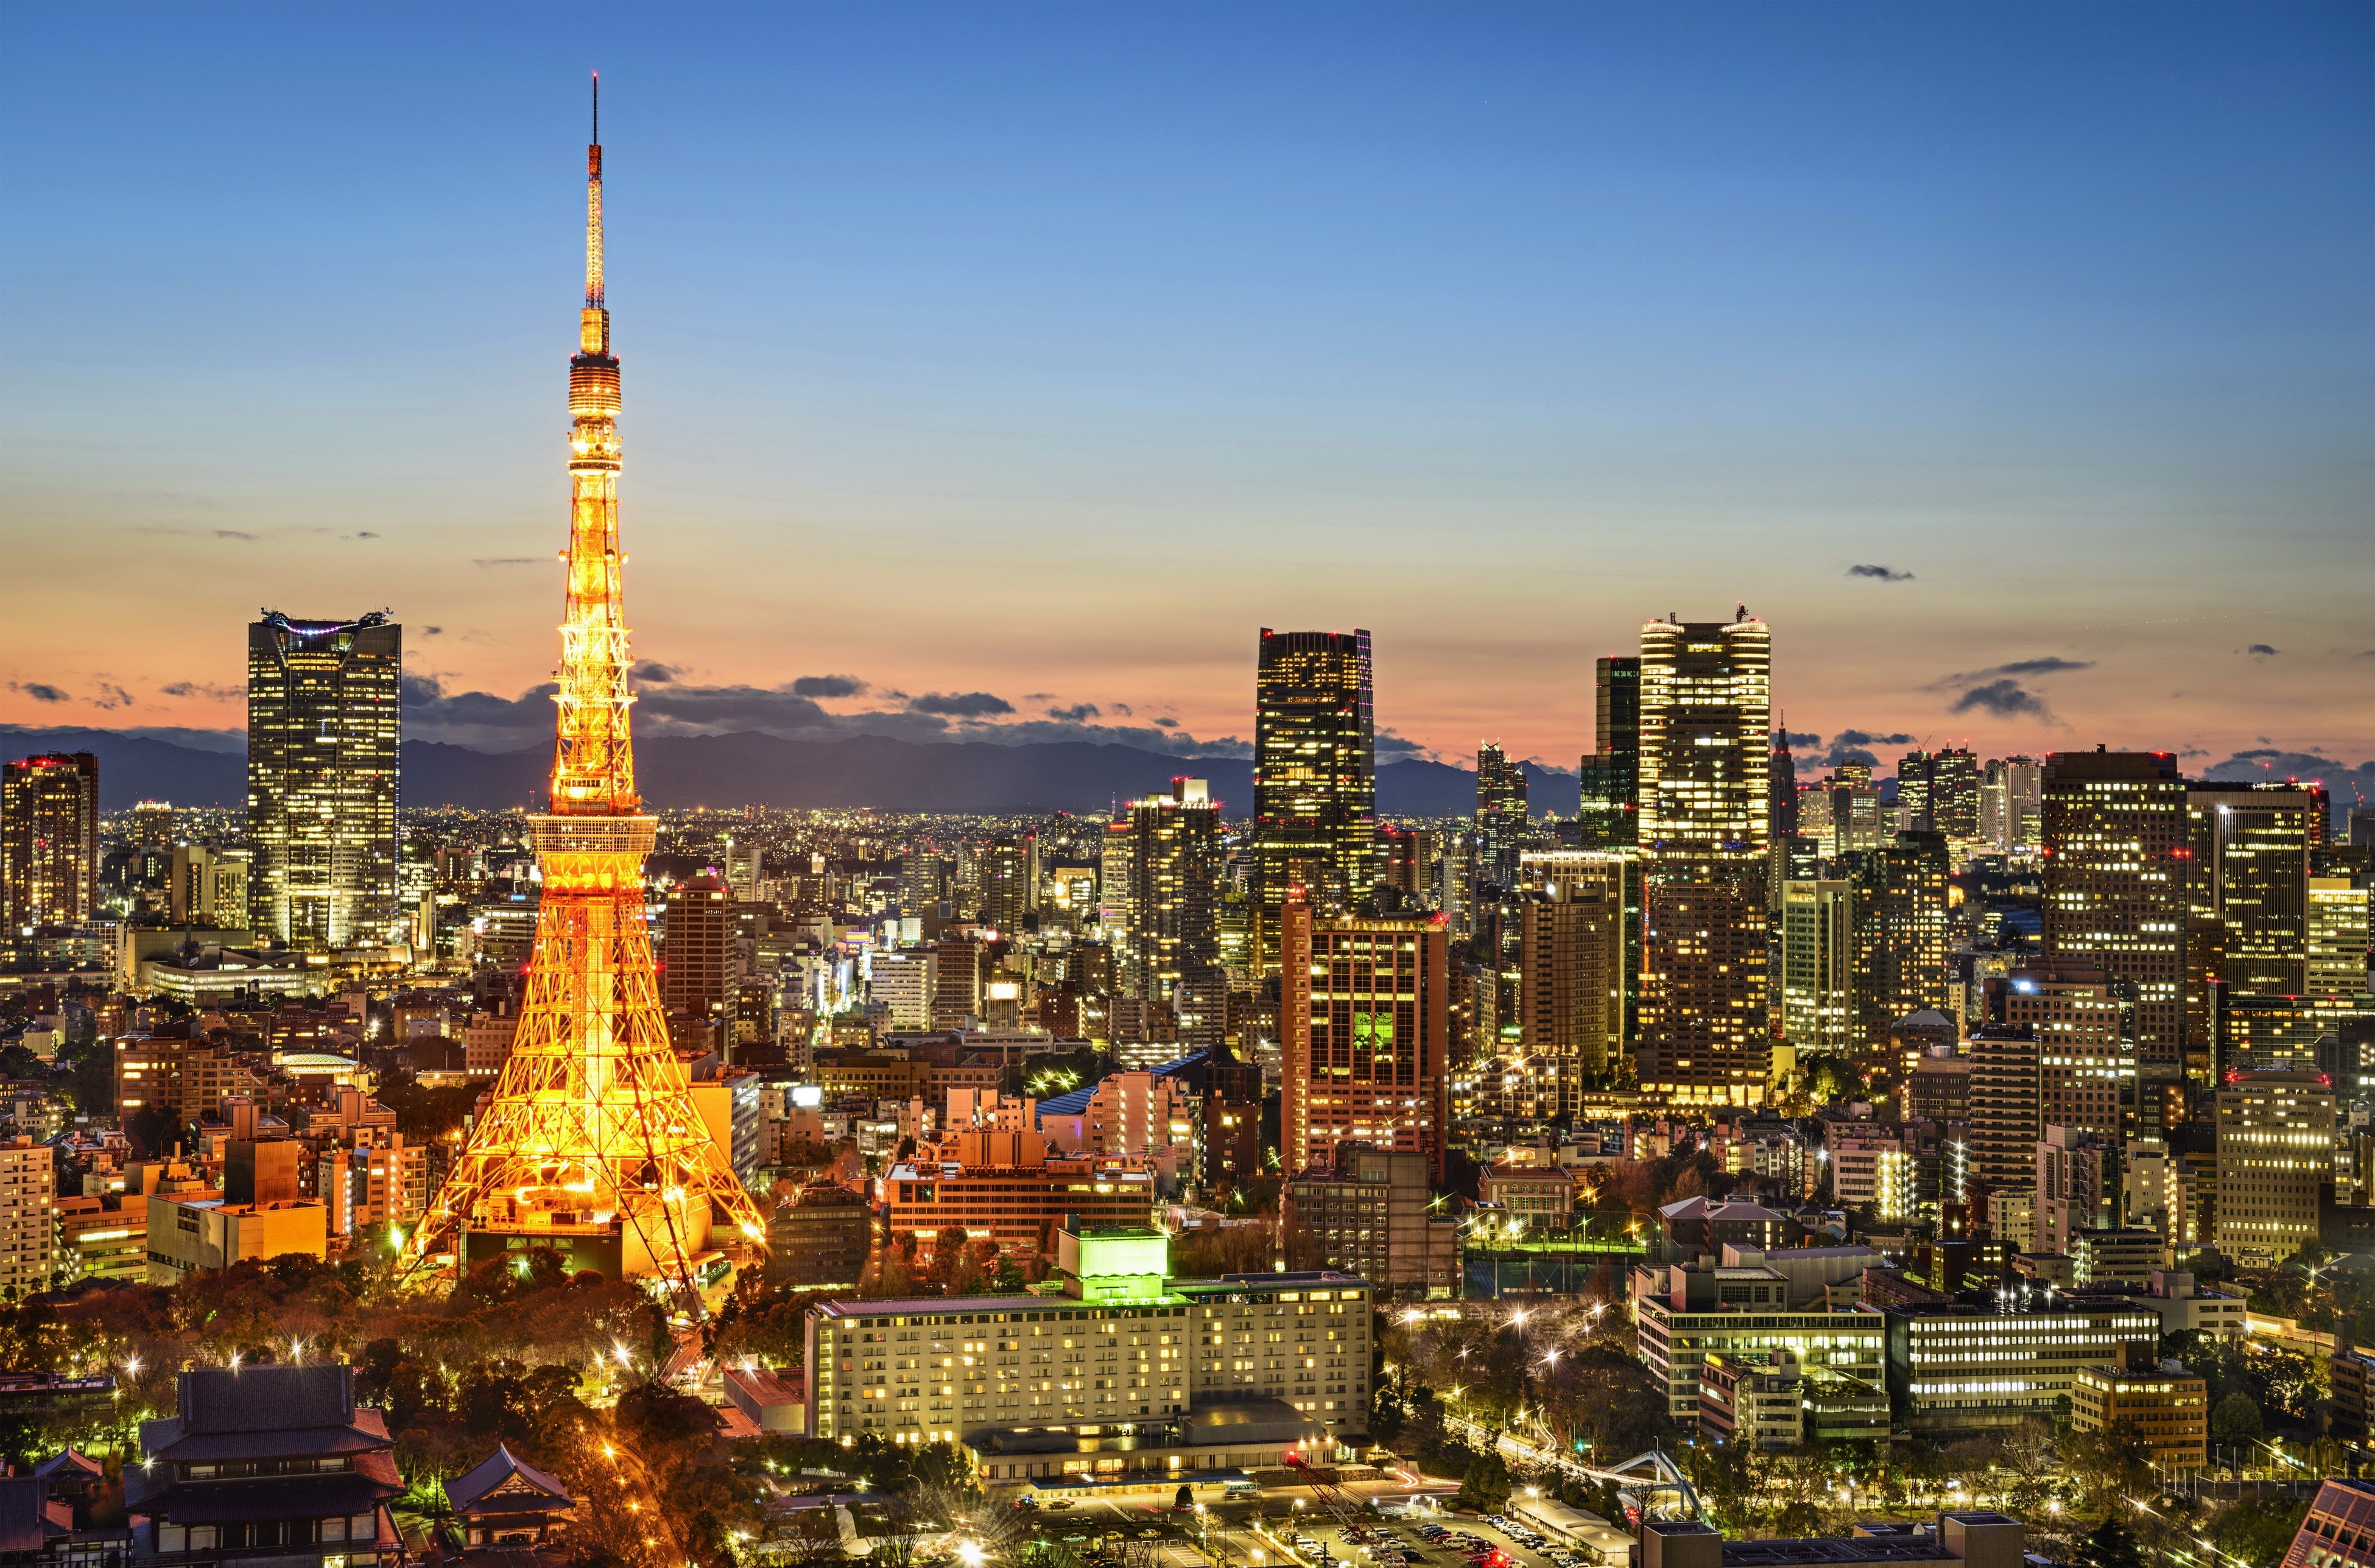 東京タワーの壁紙,都市の景観,首都圏,市,市街地,スカイライン